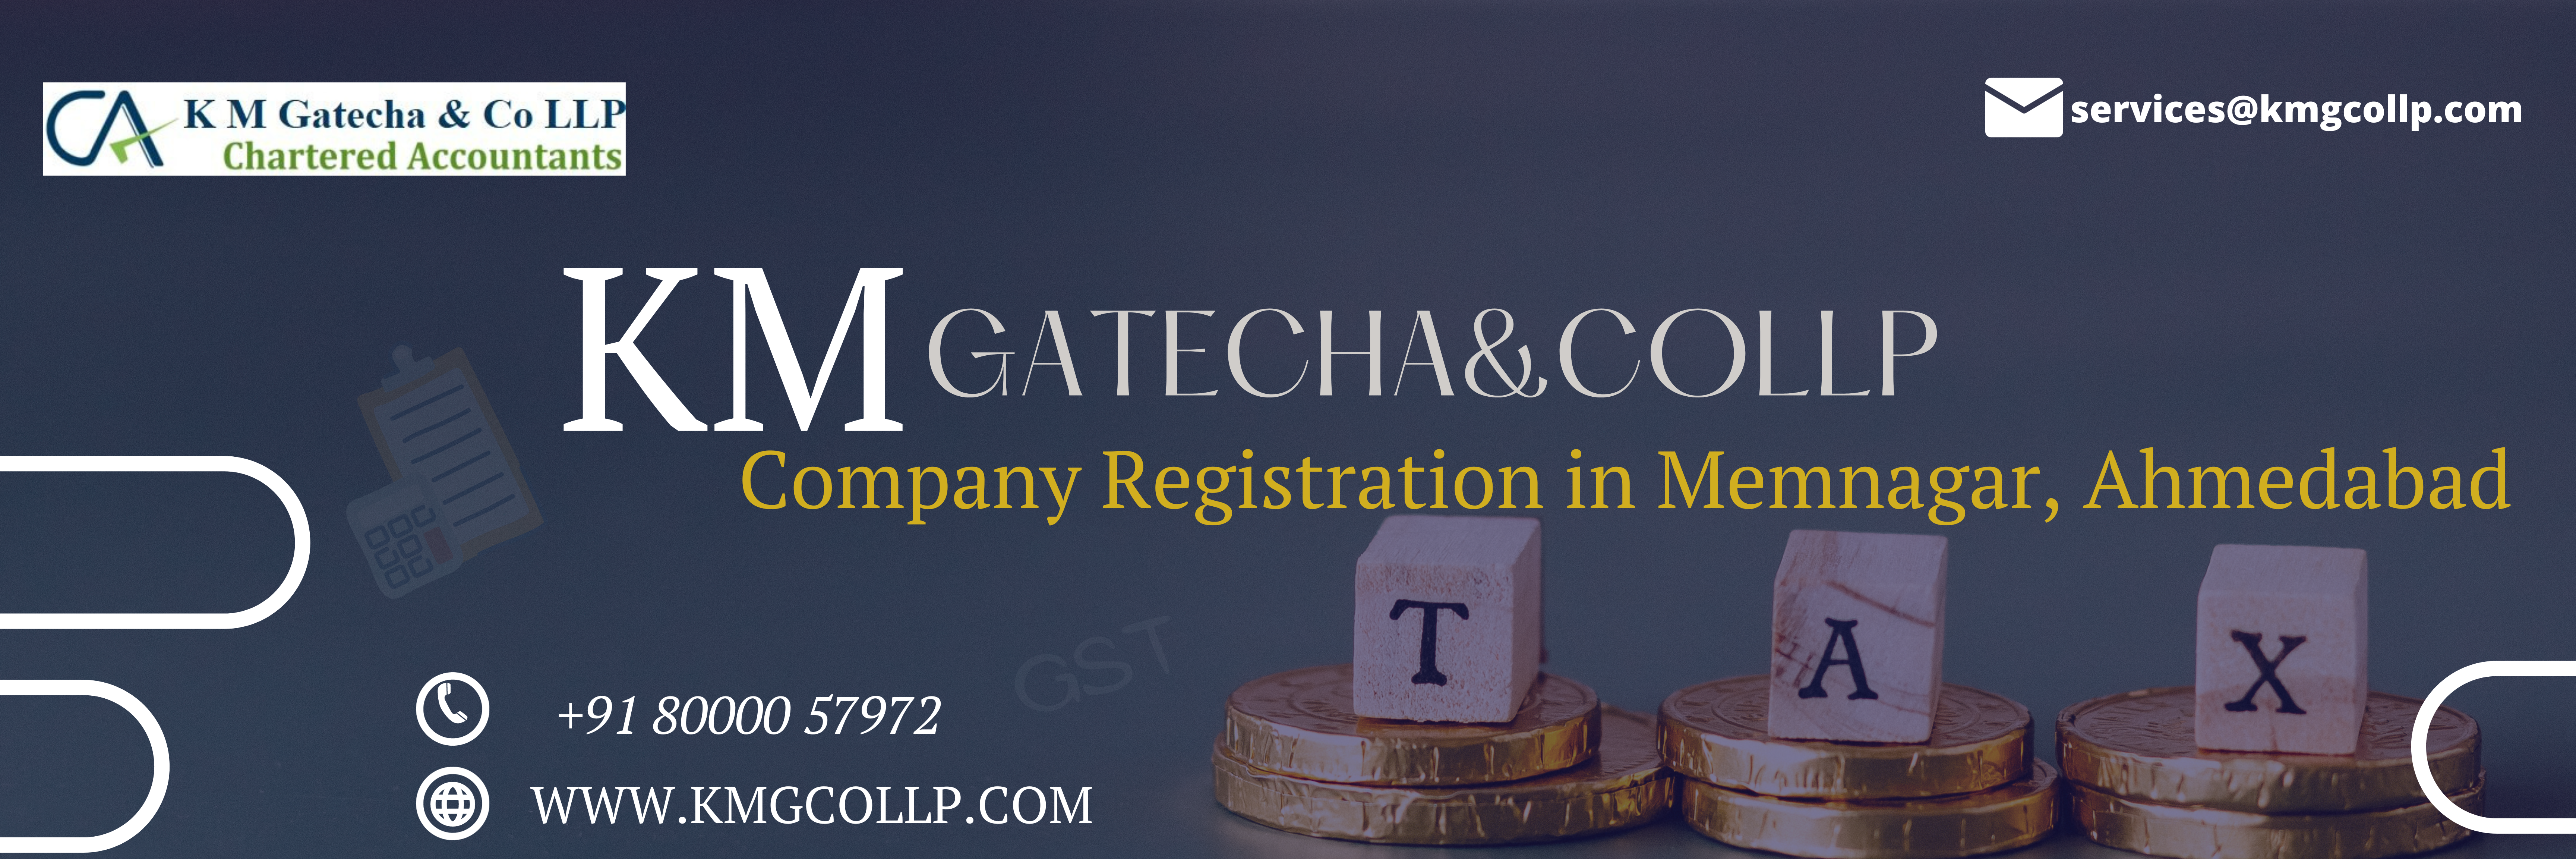 Company Registration in Memnagar